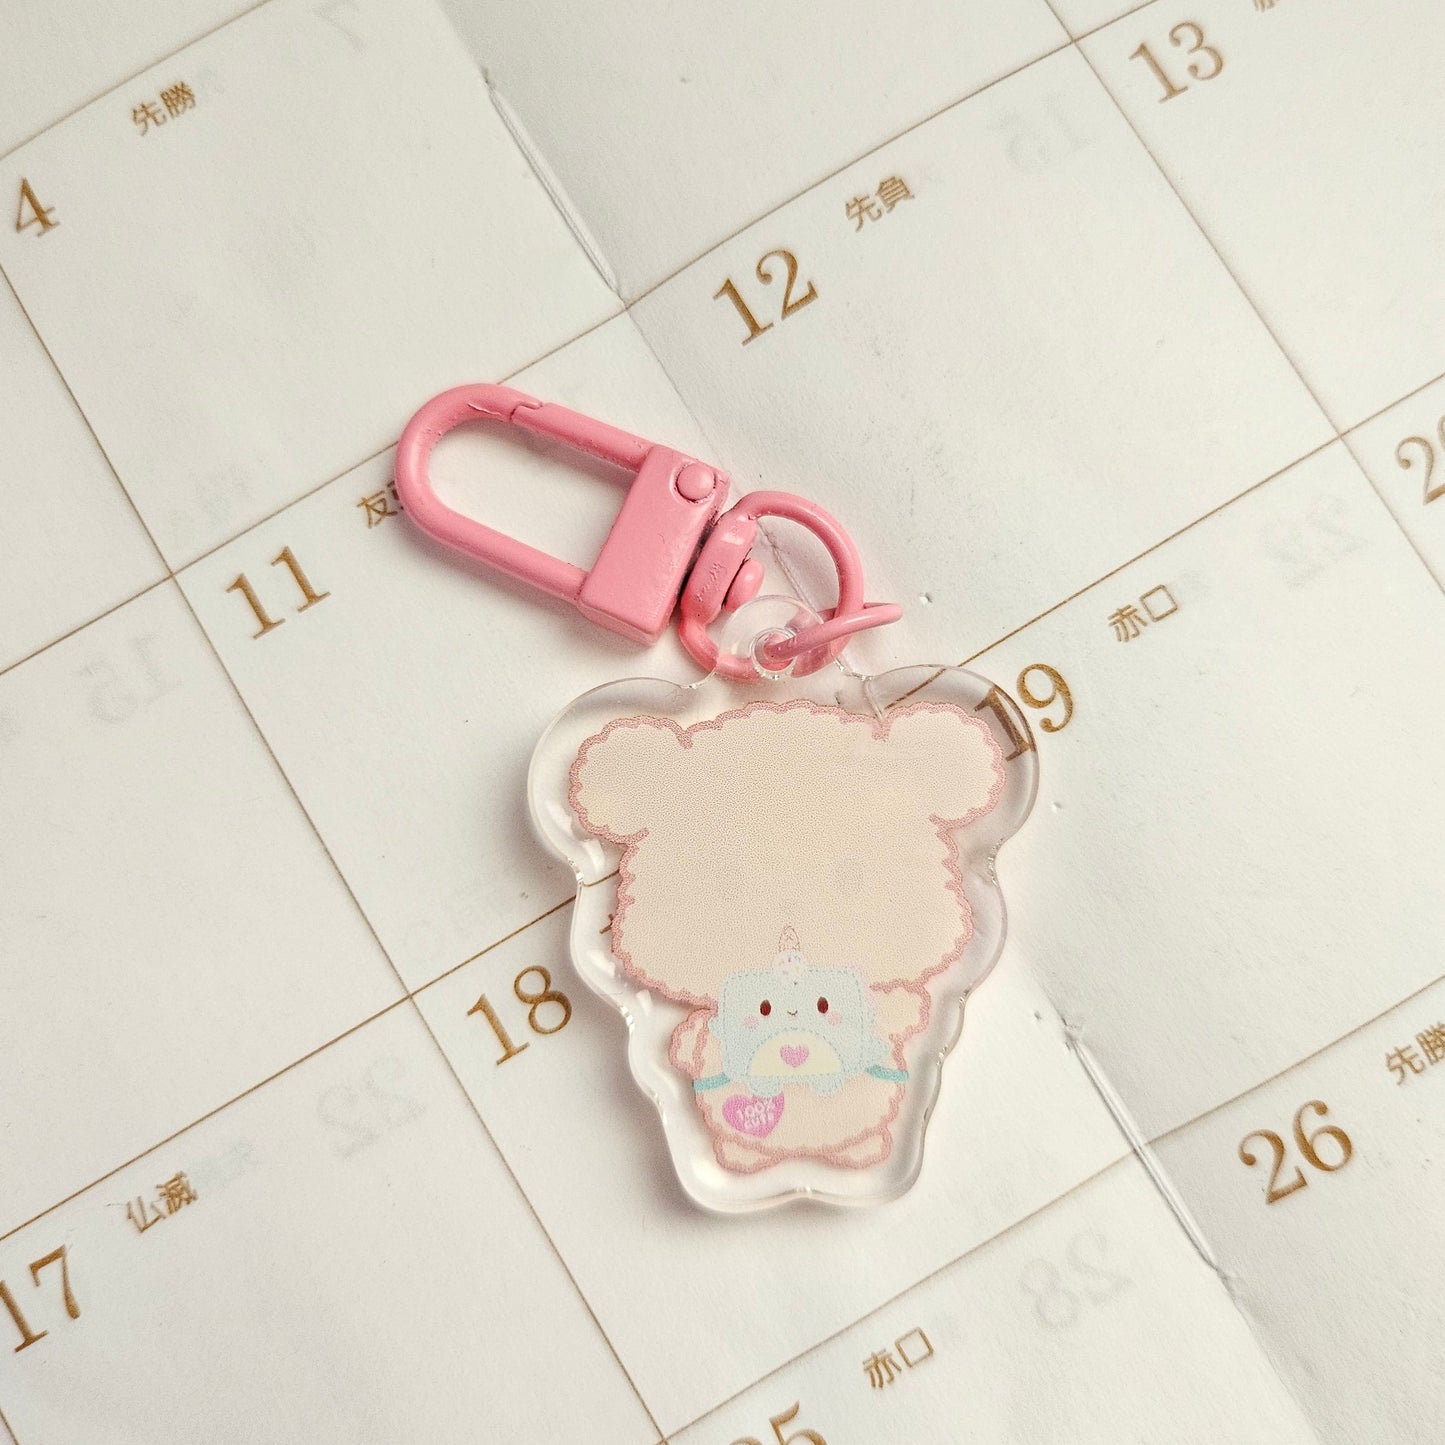 Cute Chubbyton Bear Acrylic Charm/Keychain